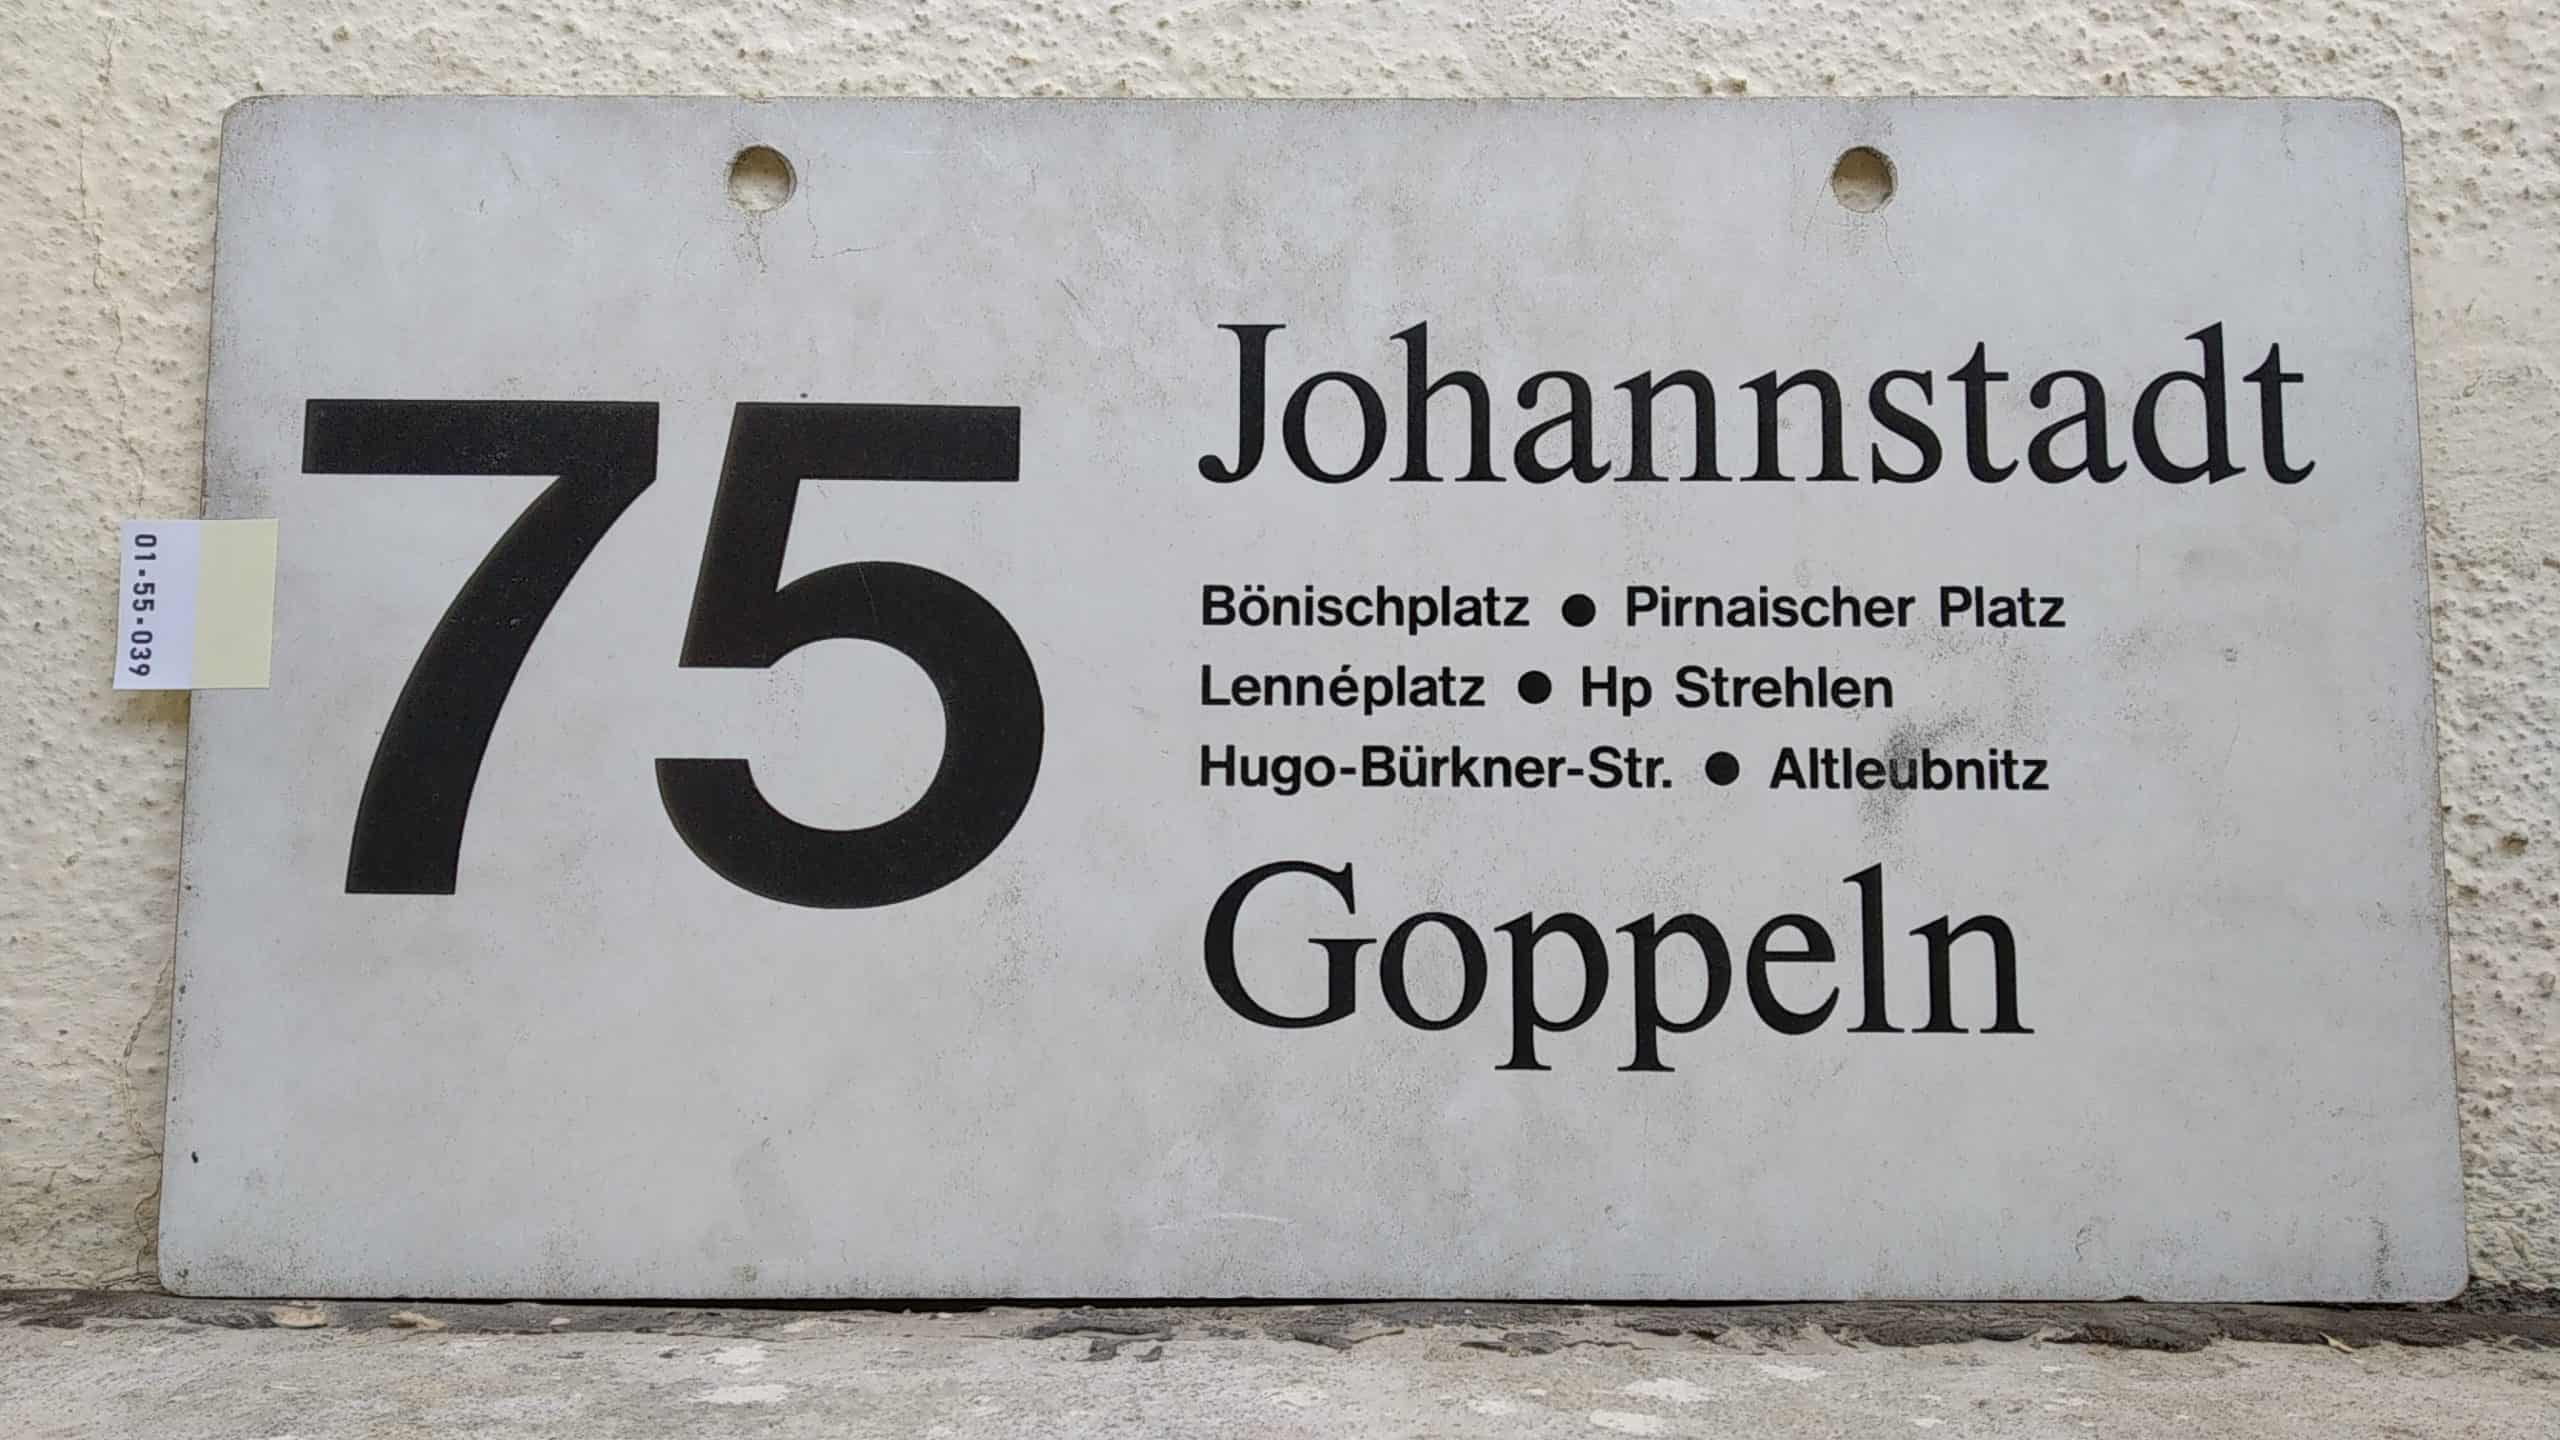 Ein seltenes Bus-Linienschild aus Dresden der Linie 75 von Johannstadt nach Goppeln #1